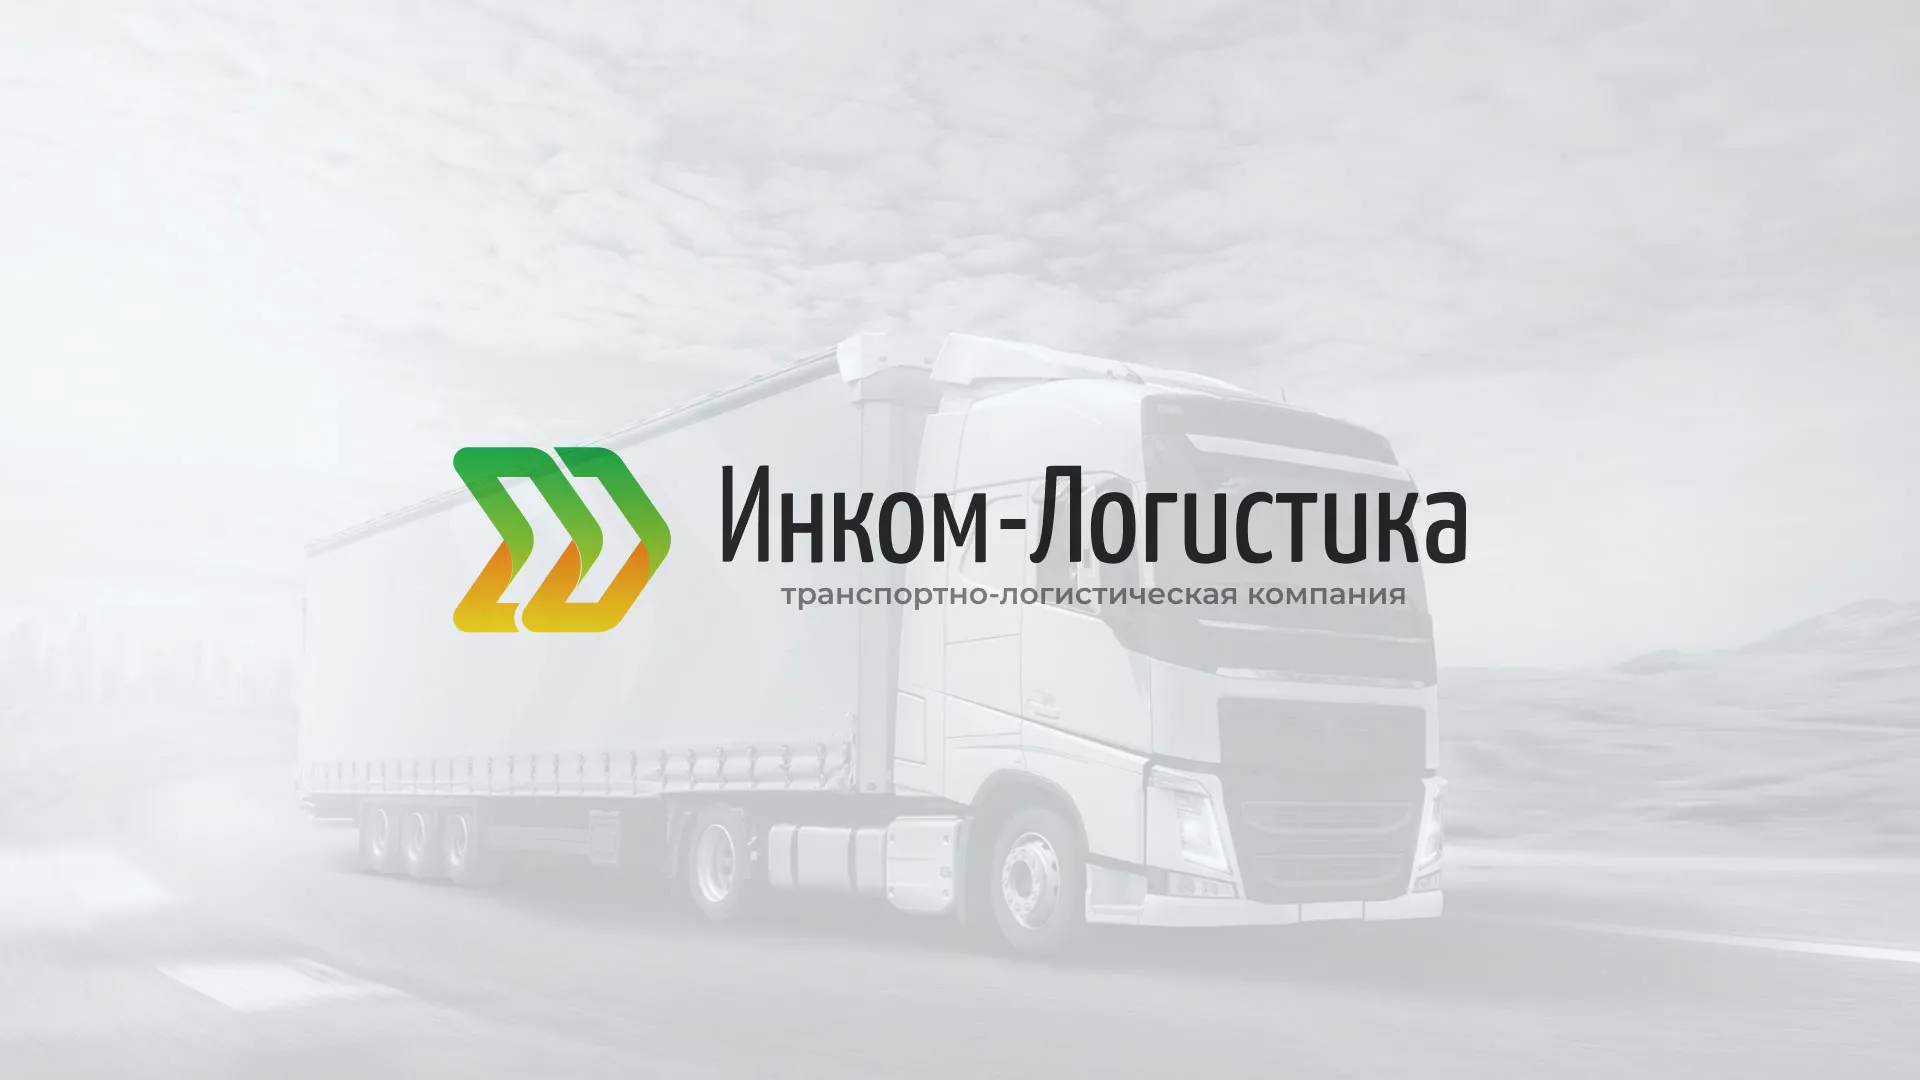 Разработка логотипа и сайта компании «Инком-Логистика» в Верхнеуральске